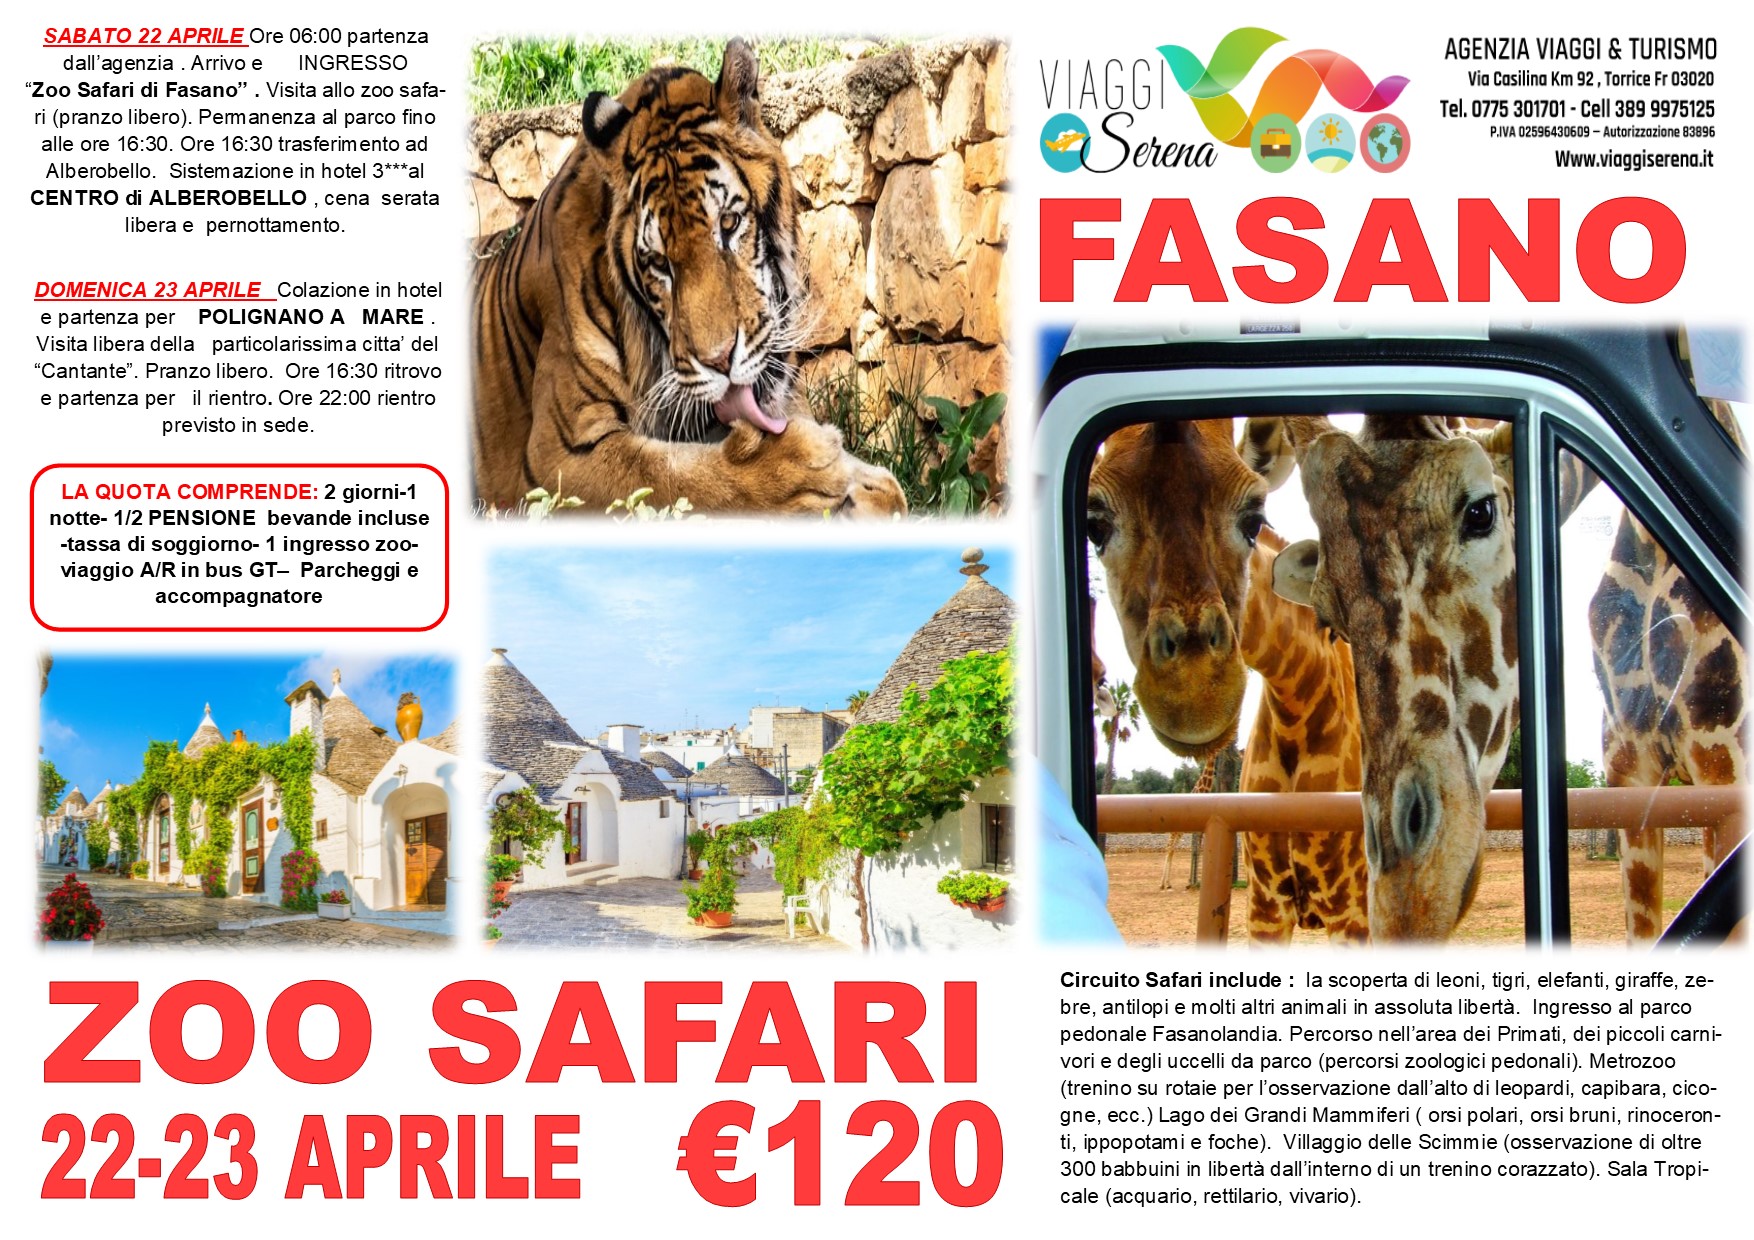 Viaggi di Gruppo: Zoo Safari , Alberobello e Polignano a Mare 22-23 Aprile €120,00